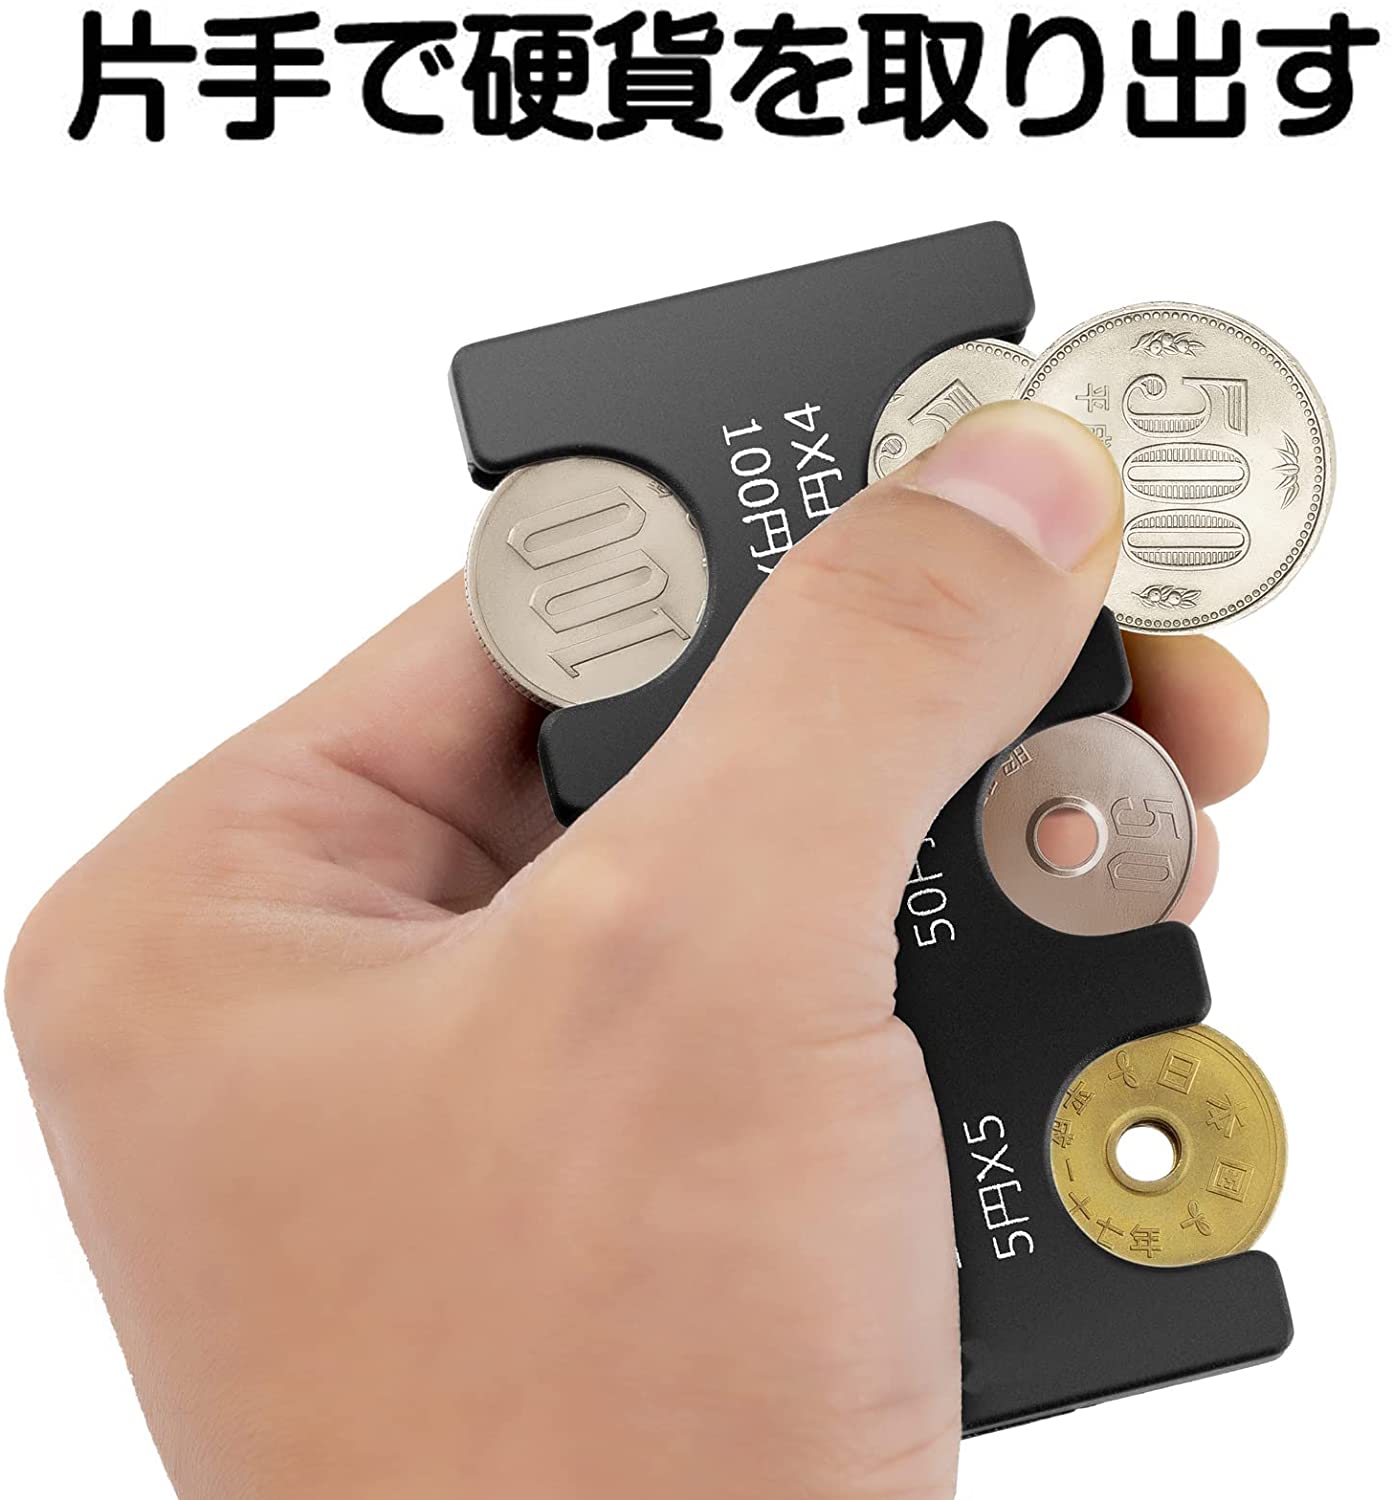 携帯 コインホルダー 硬貨収納 小銭財布 軽量 コンパクト 片手で取り出せ ブラック (ブラック)742216